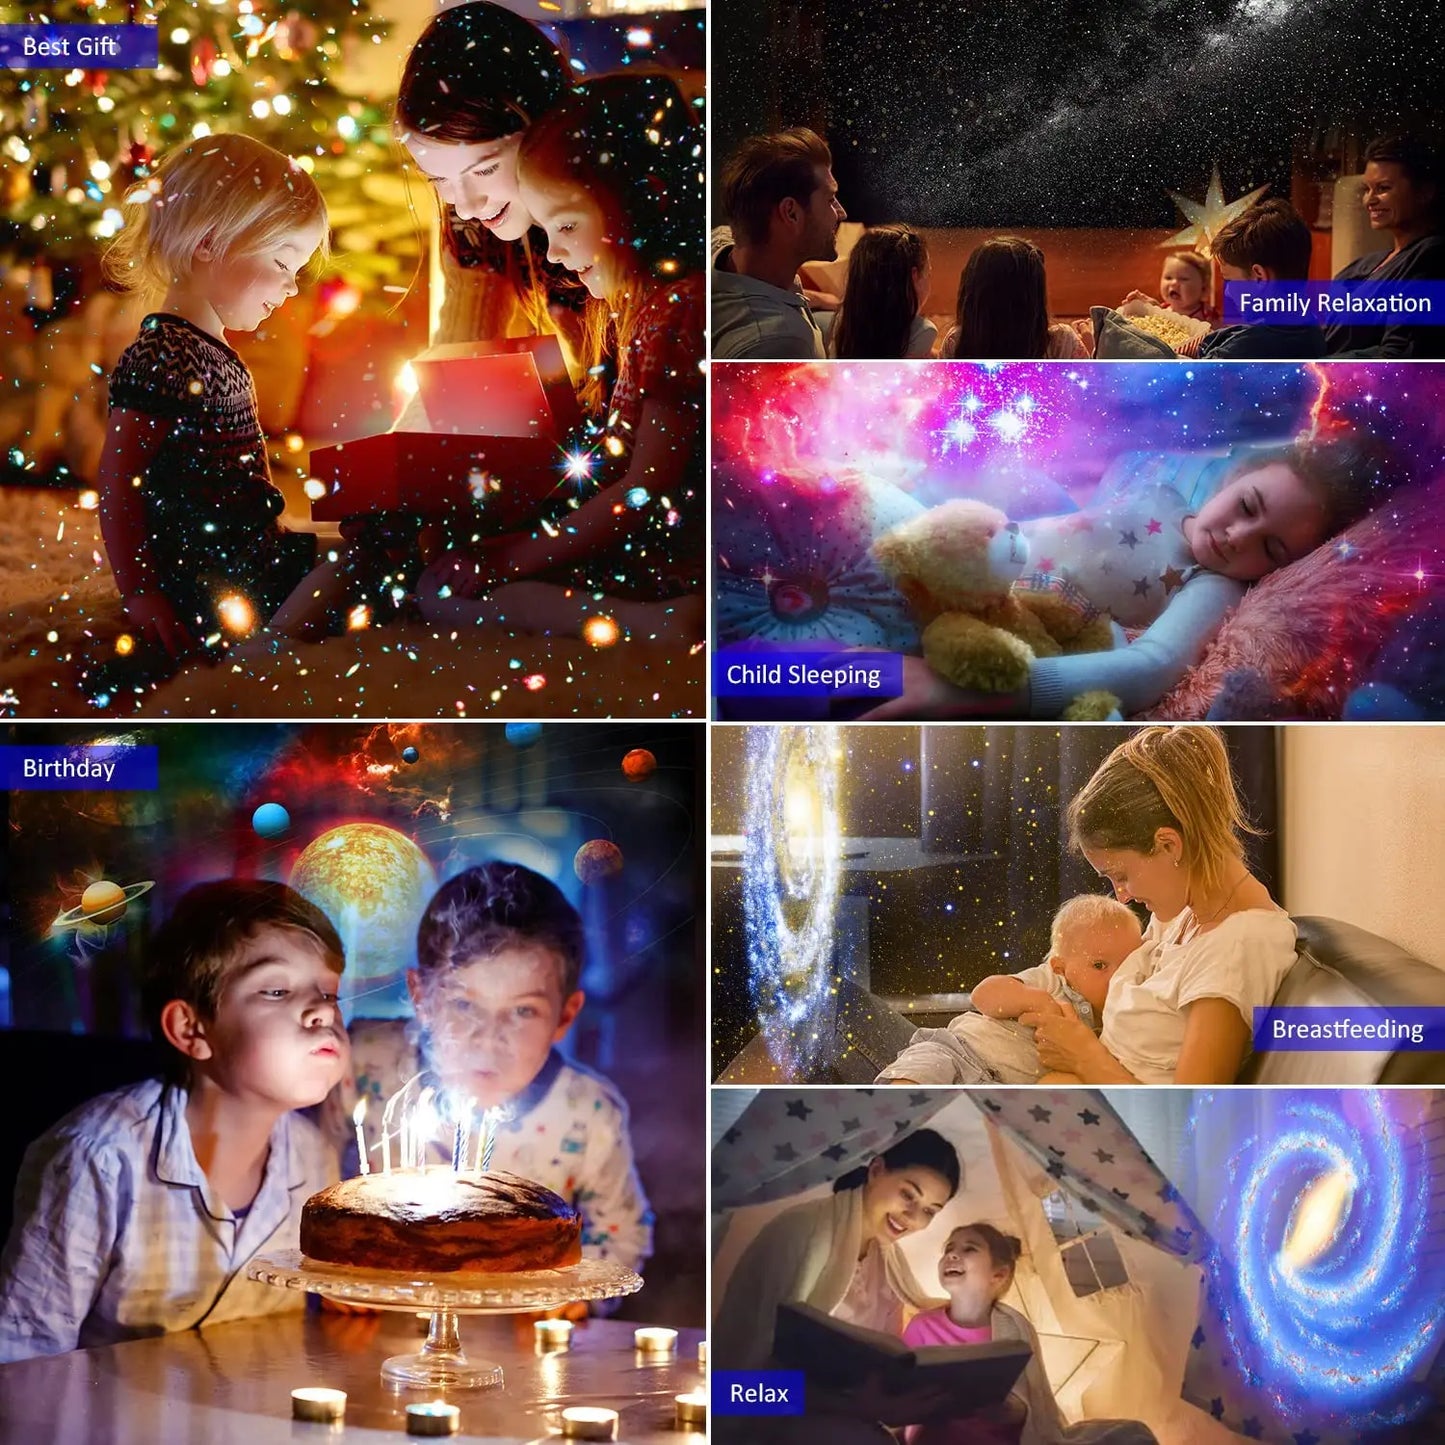 NEUE 13 In 1 Planetarium Galaxy Sternen Himmel Projektor Nachtlicht HD Stern Aurora Projektion Lampe Für Kinder Schlafzimmer Hause party Dekor